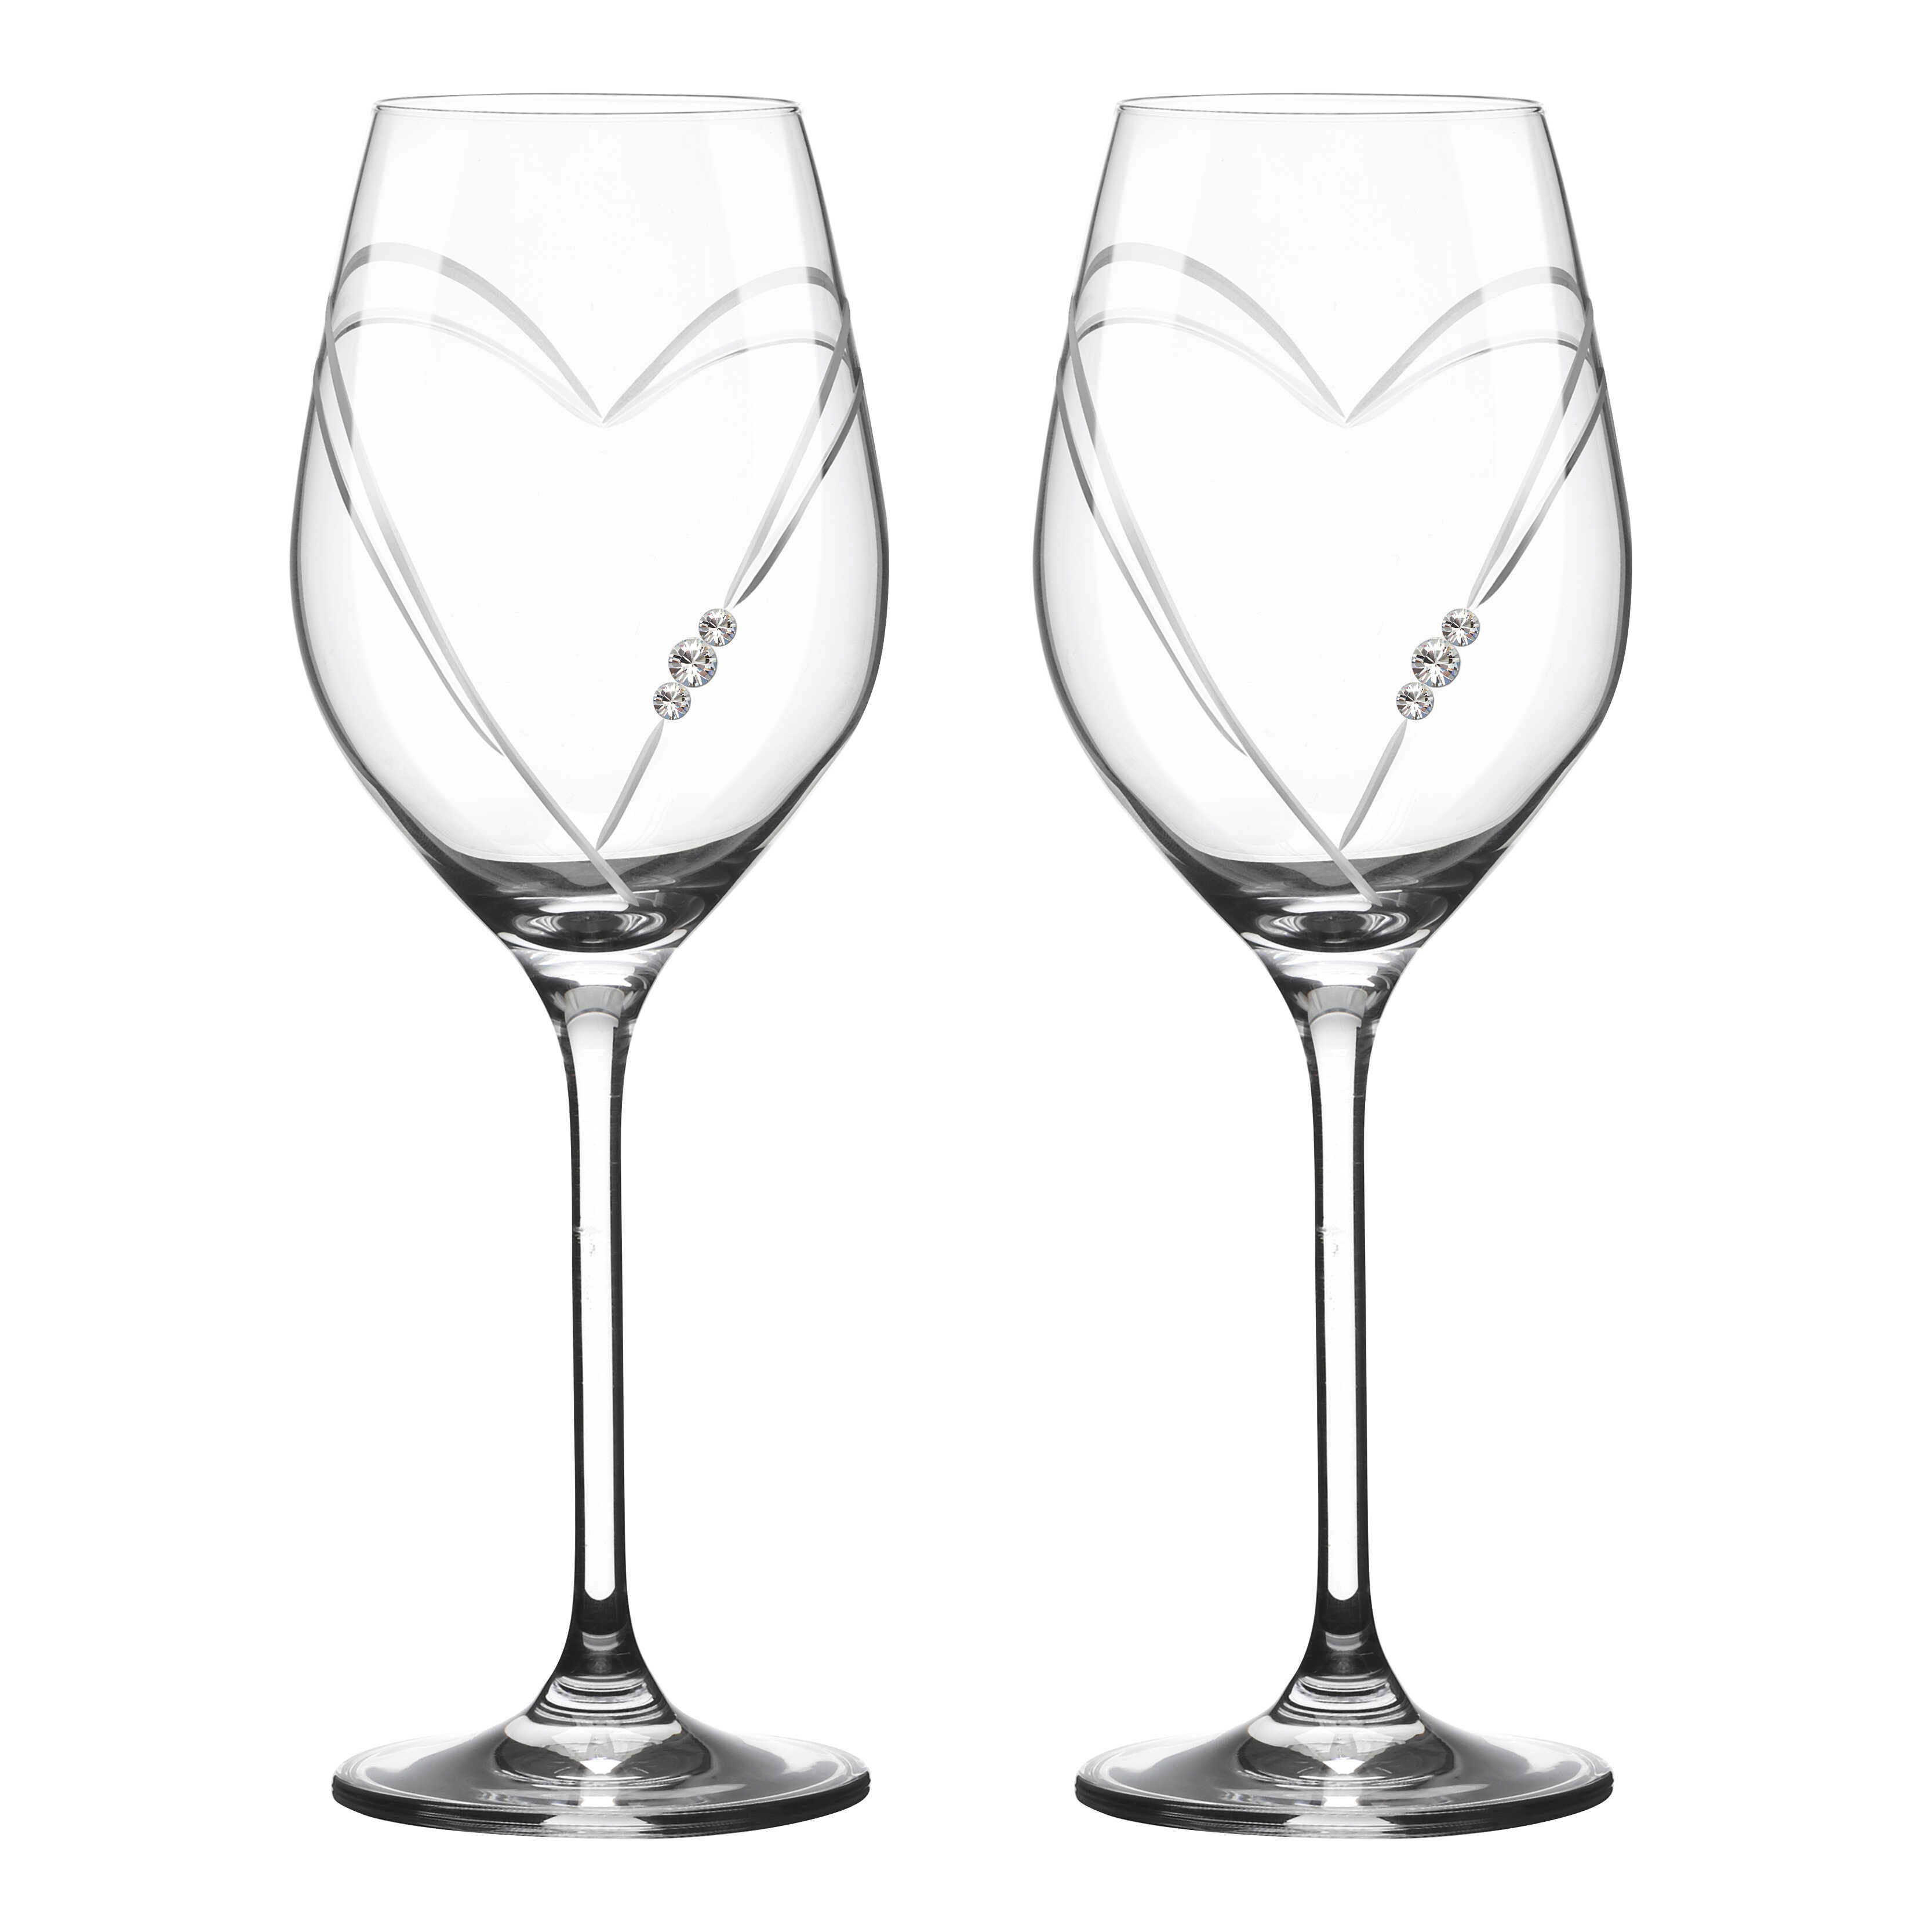 Two Hearts Hvidvinsglas med Swarovski krystaller - 2 stk.